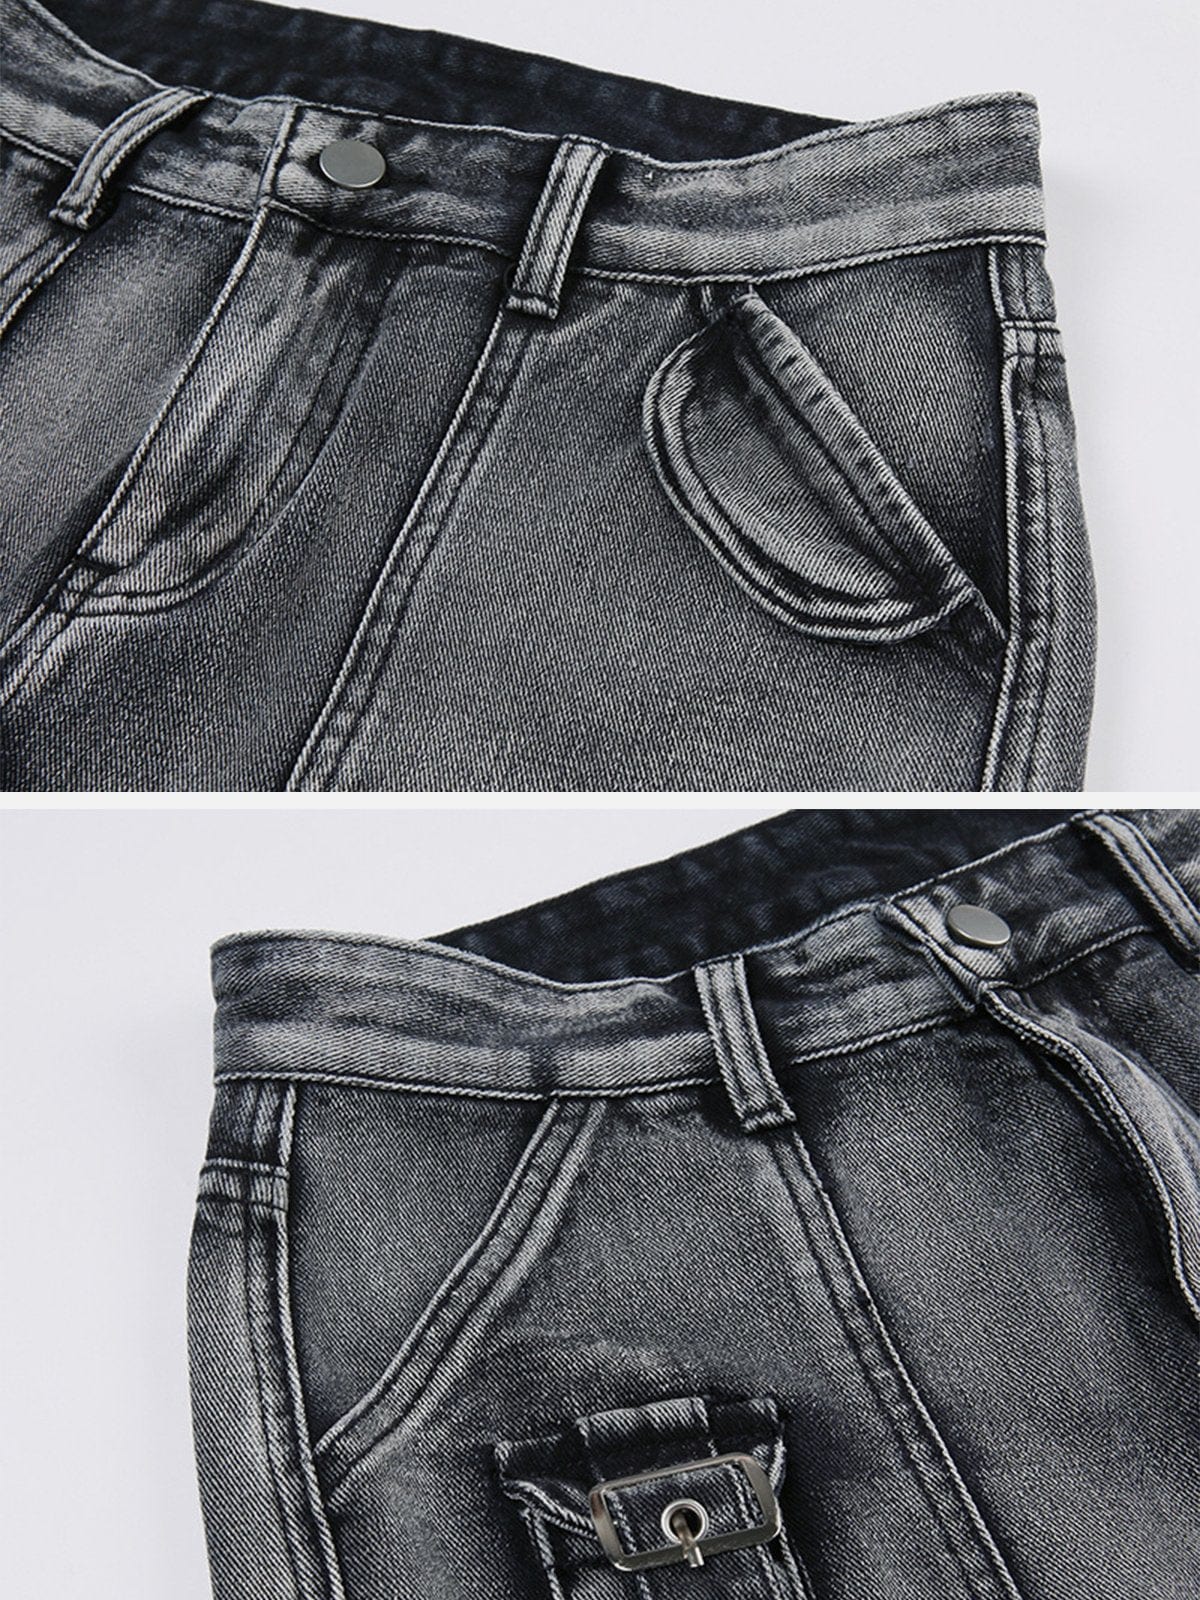 TO Vintage Baggy Pocket Jeans